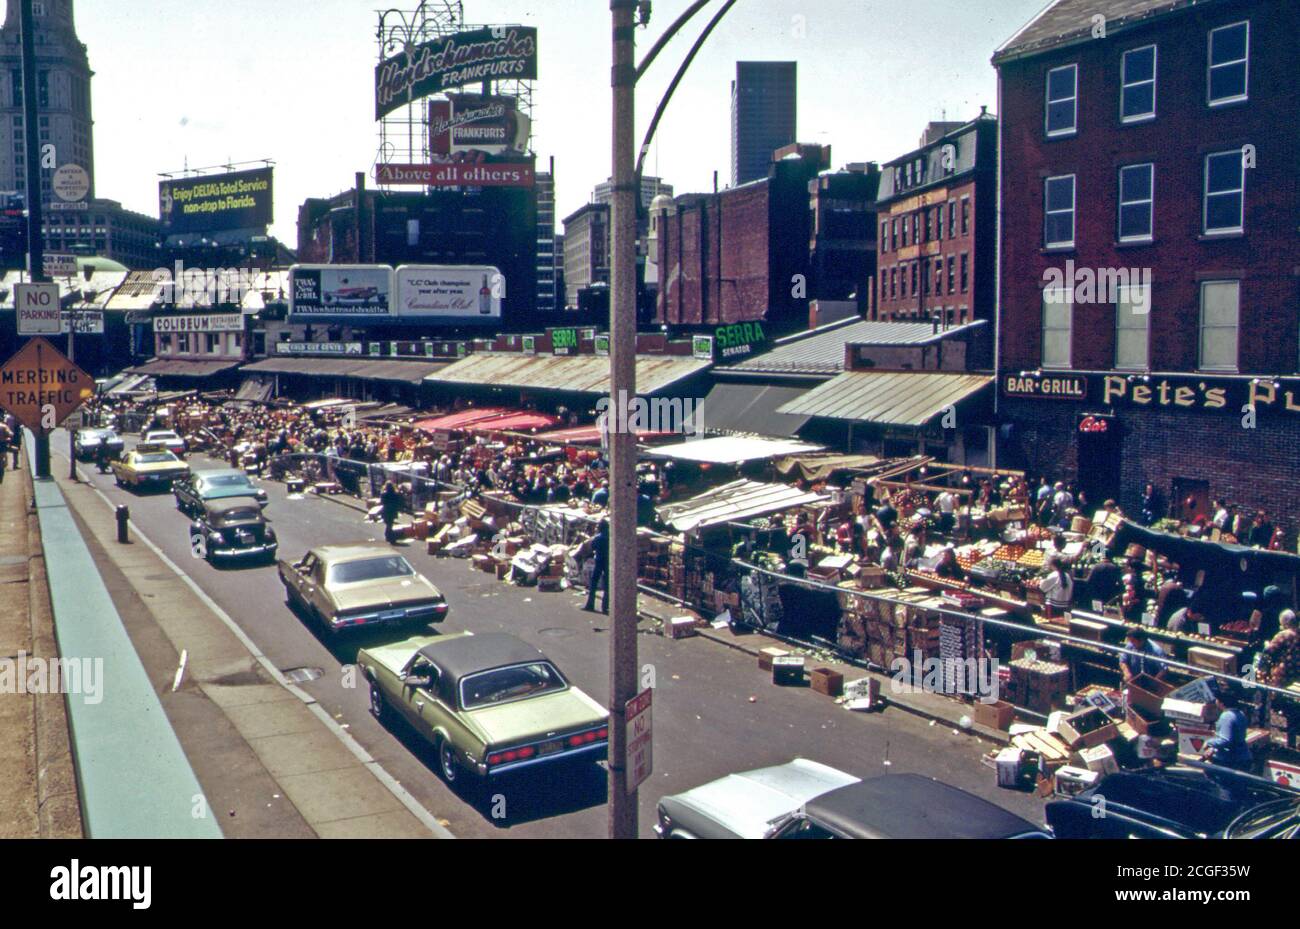 Mercado de comida al aire libre en el cuadrado de Haymarket. La protesta pública guarda la plaza de convertirse en parte de una autopista 05/1973 Foto de stock